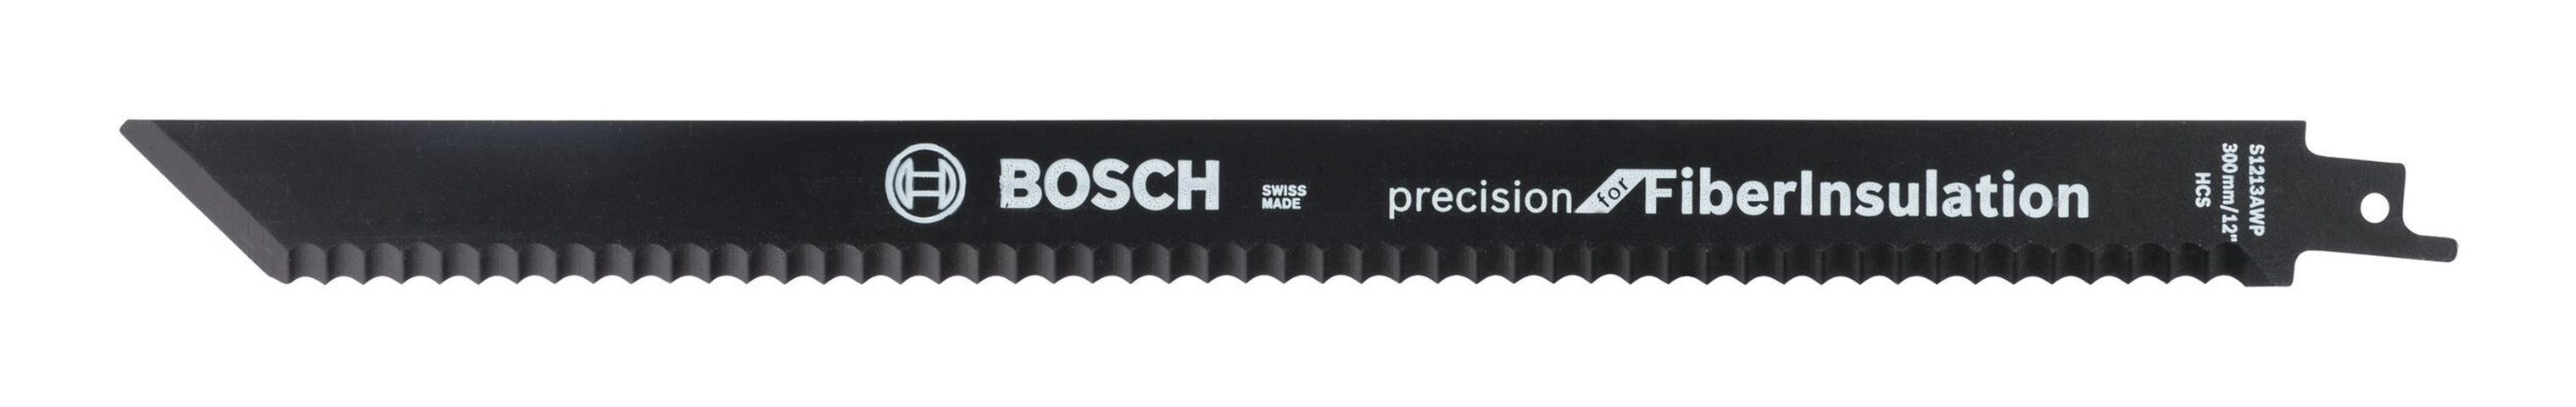 BOSCH (2 for Säbelsägeblatt FibreInsulation S 1213 - 2er-Pack AWP, Precision Stück),